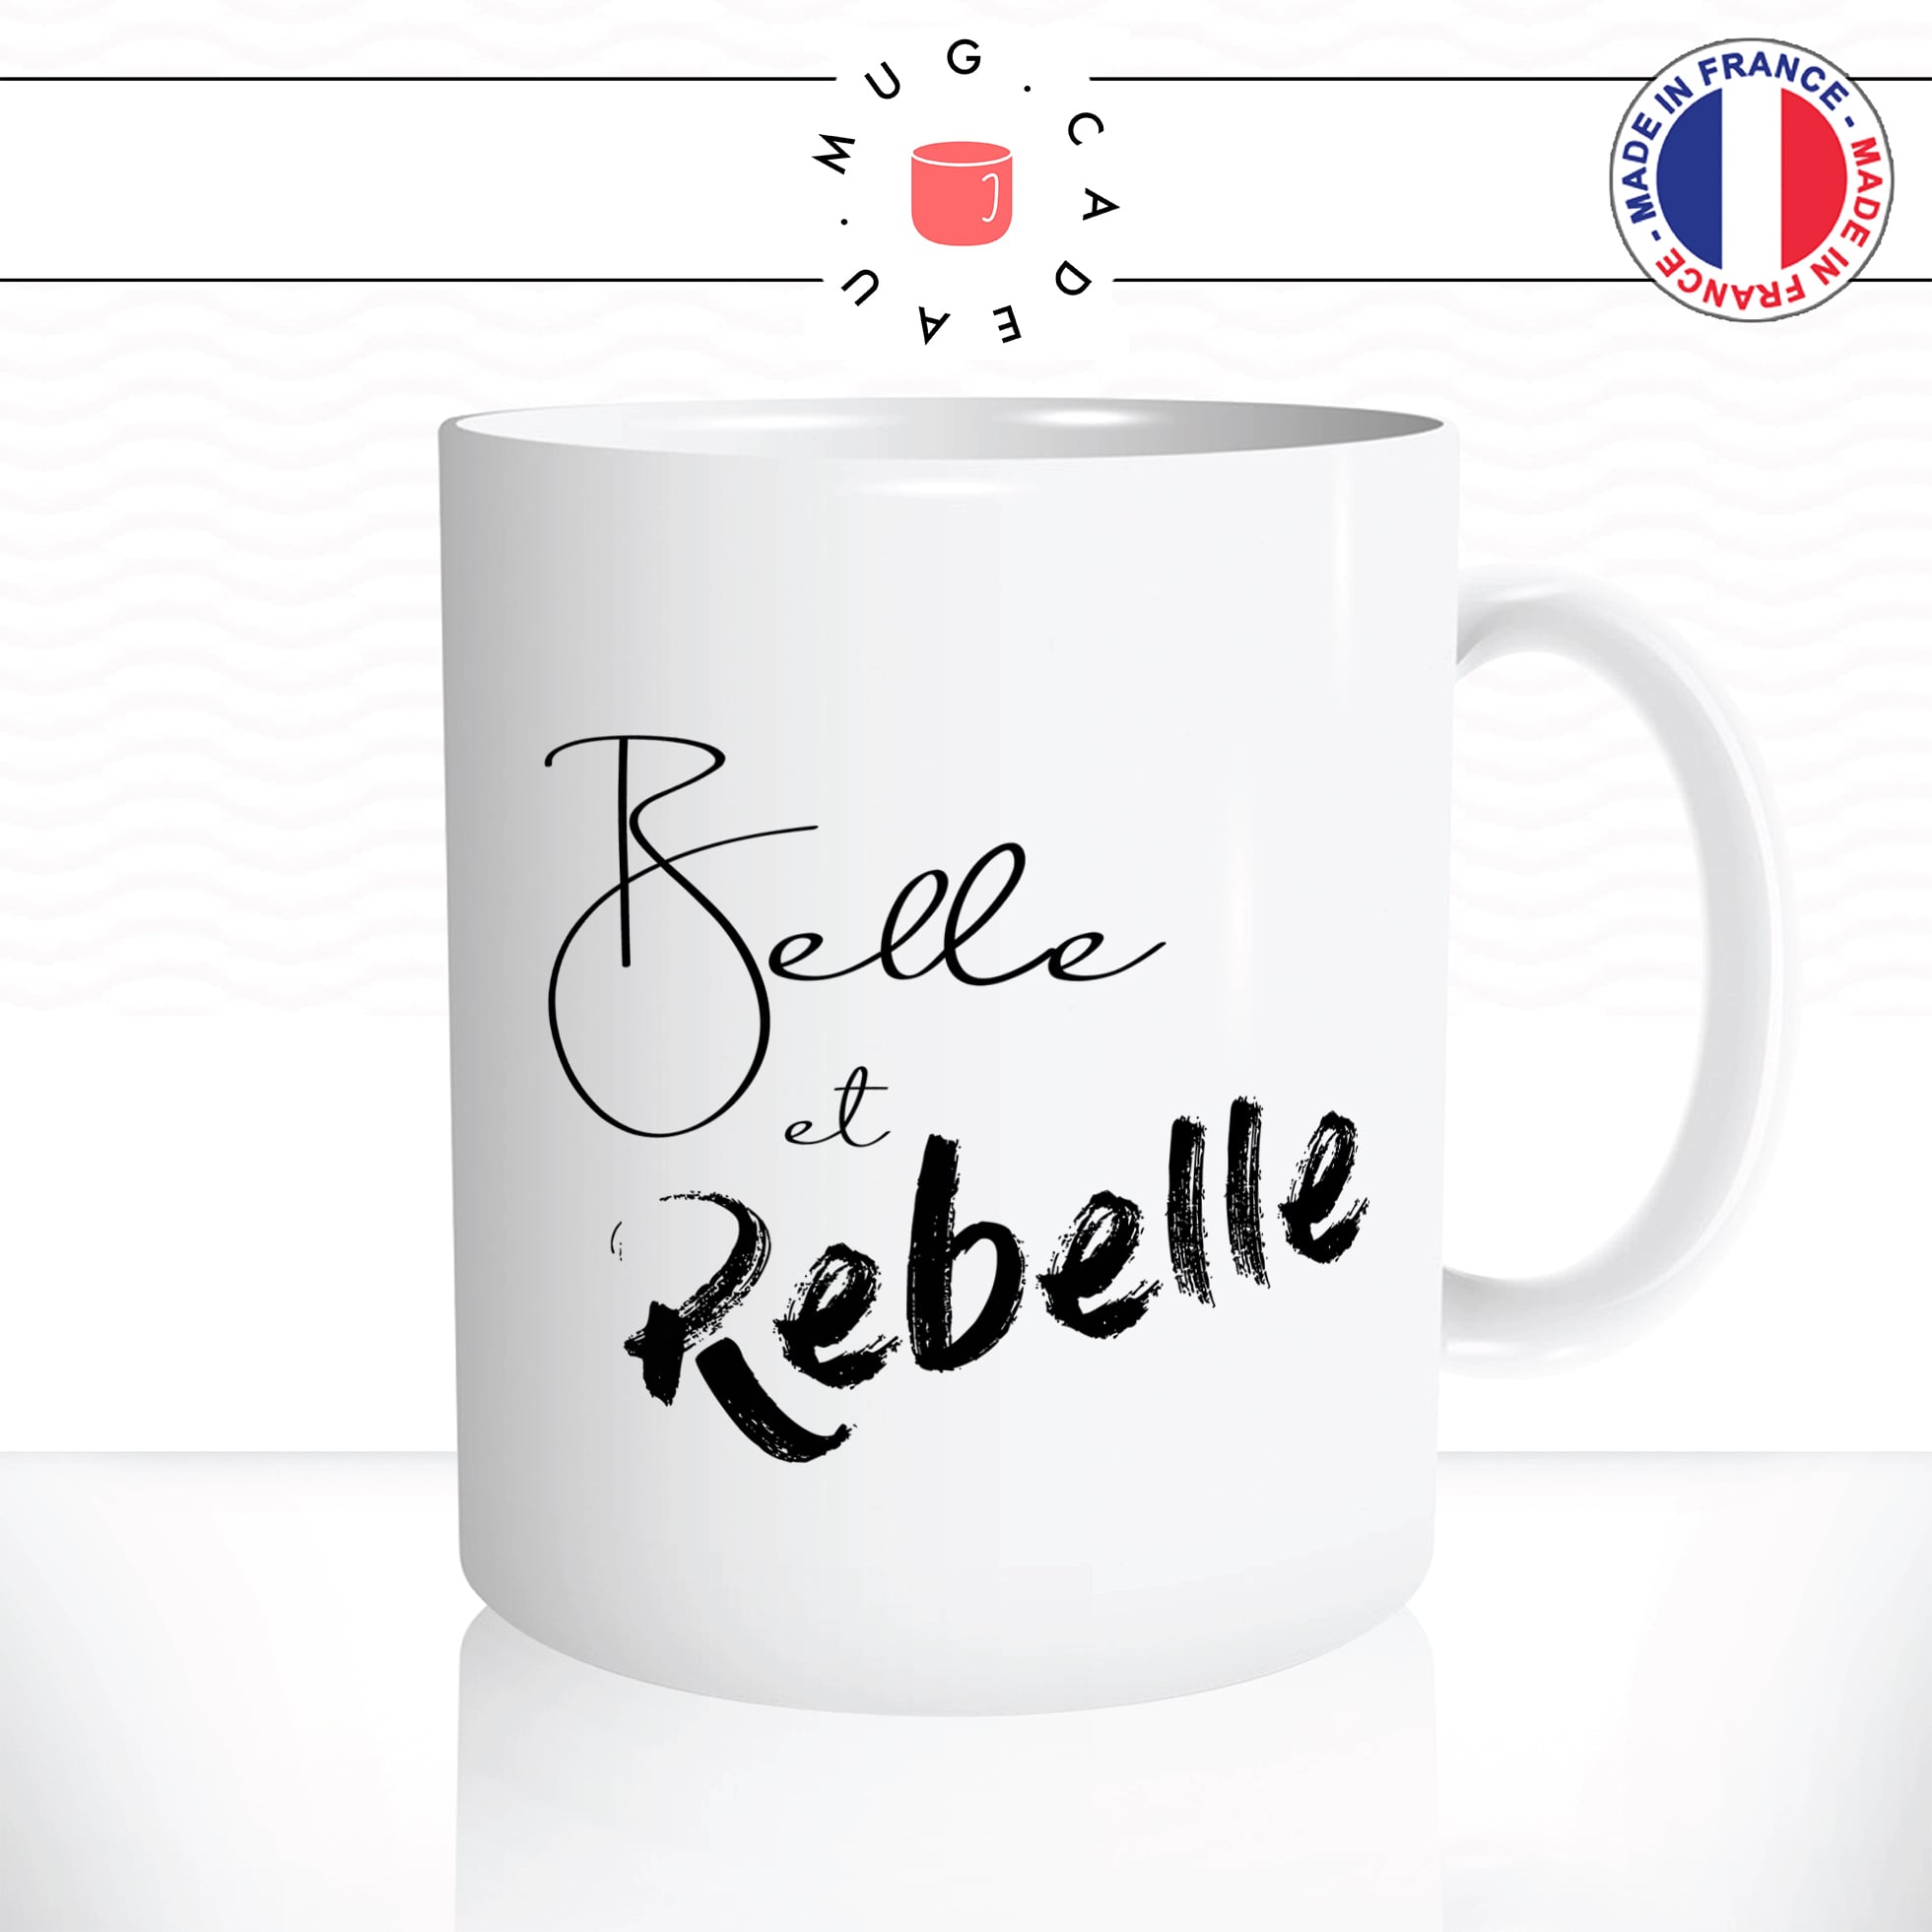 mug-tasse-belle-rebelle-moche-citation-phrase-fille-femme-drole-humour-fun-matin-reveil-café-thé-mugs-tasses-idée-cadeau-original-personnalisée2-min